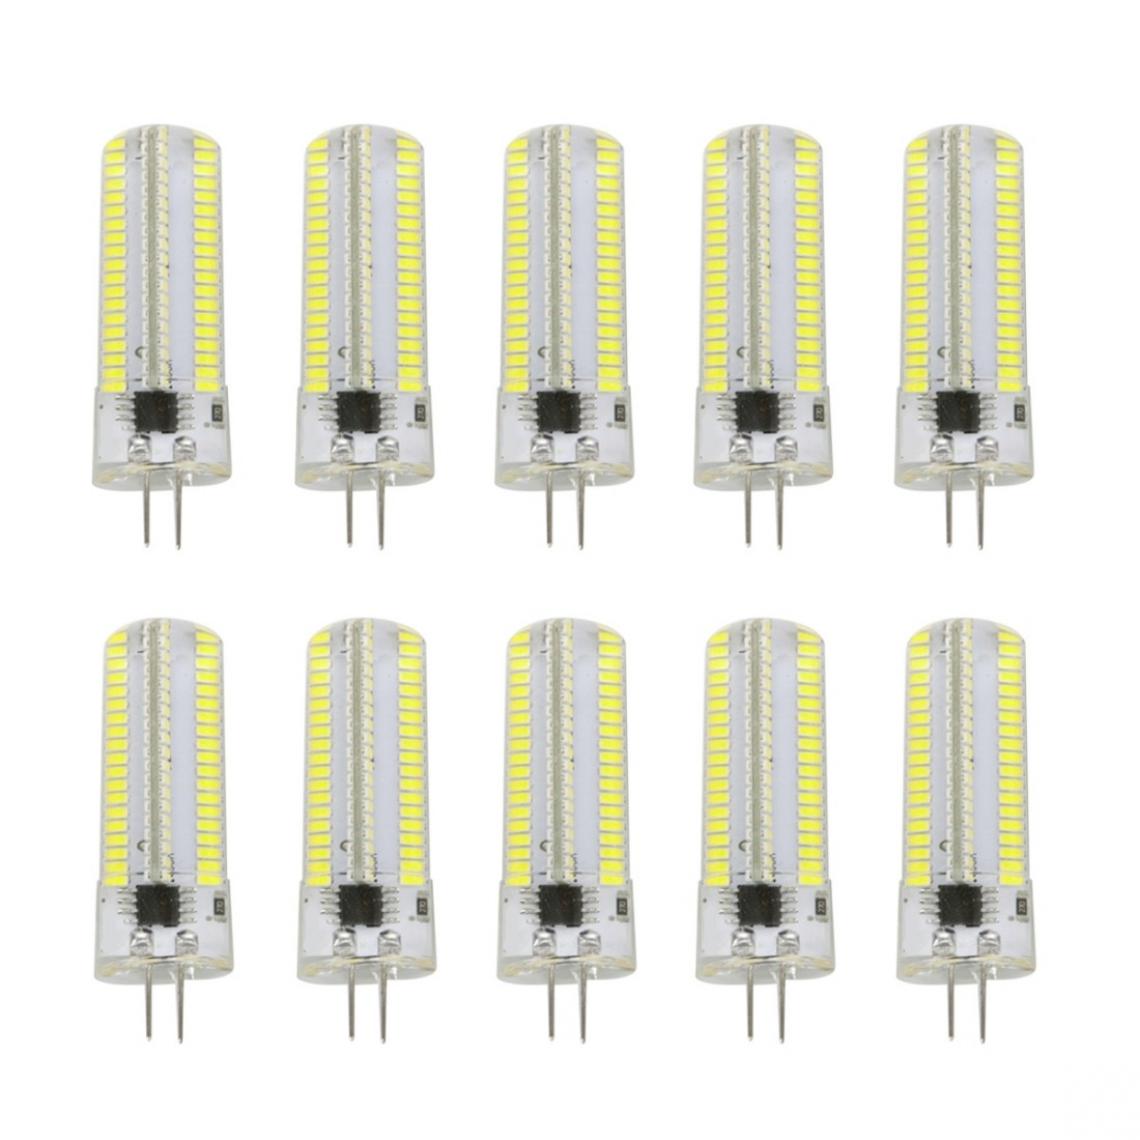 Wewoo - 10 PCS G4 7W 152 LED 3014 SMD 600-700 LM ampoules de maïs en silicone à intensité variable et blanc froidCA 110V - Ampoules LED